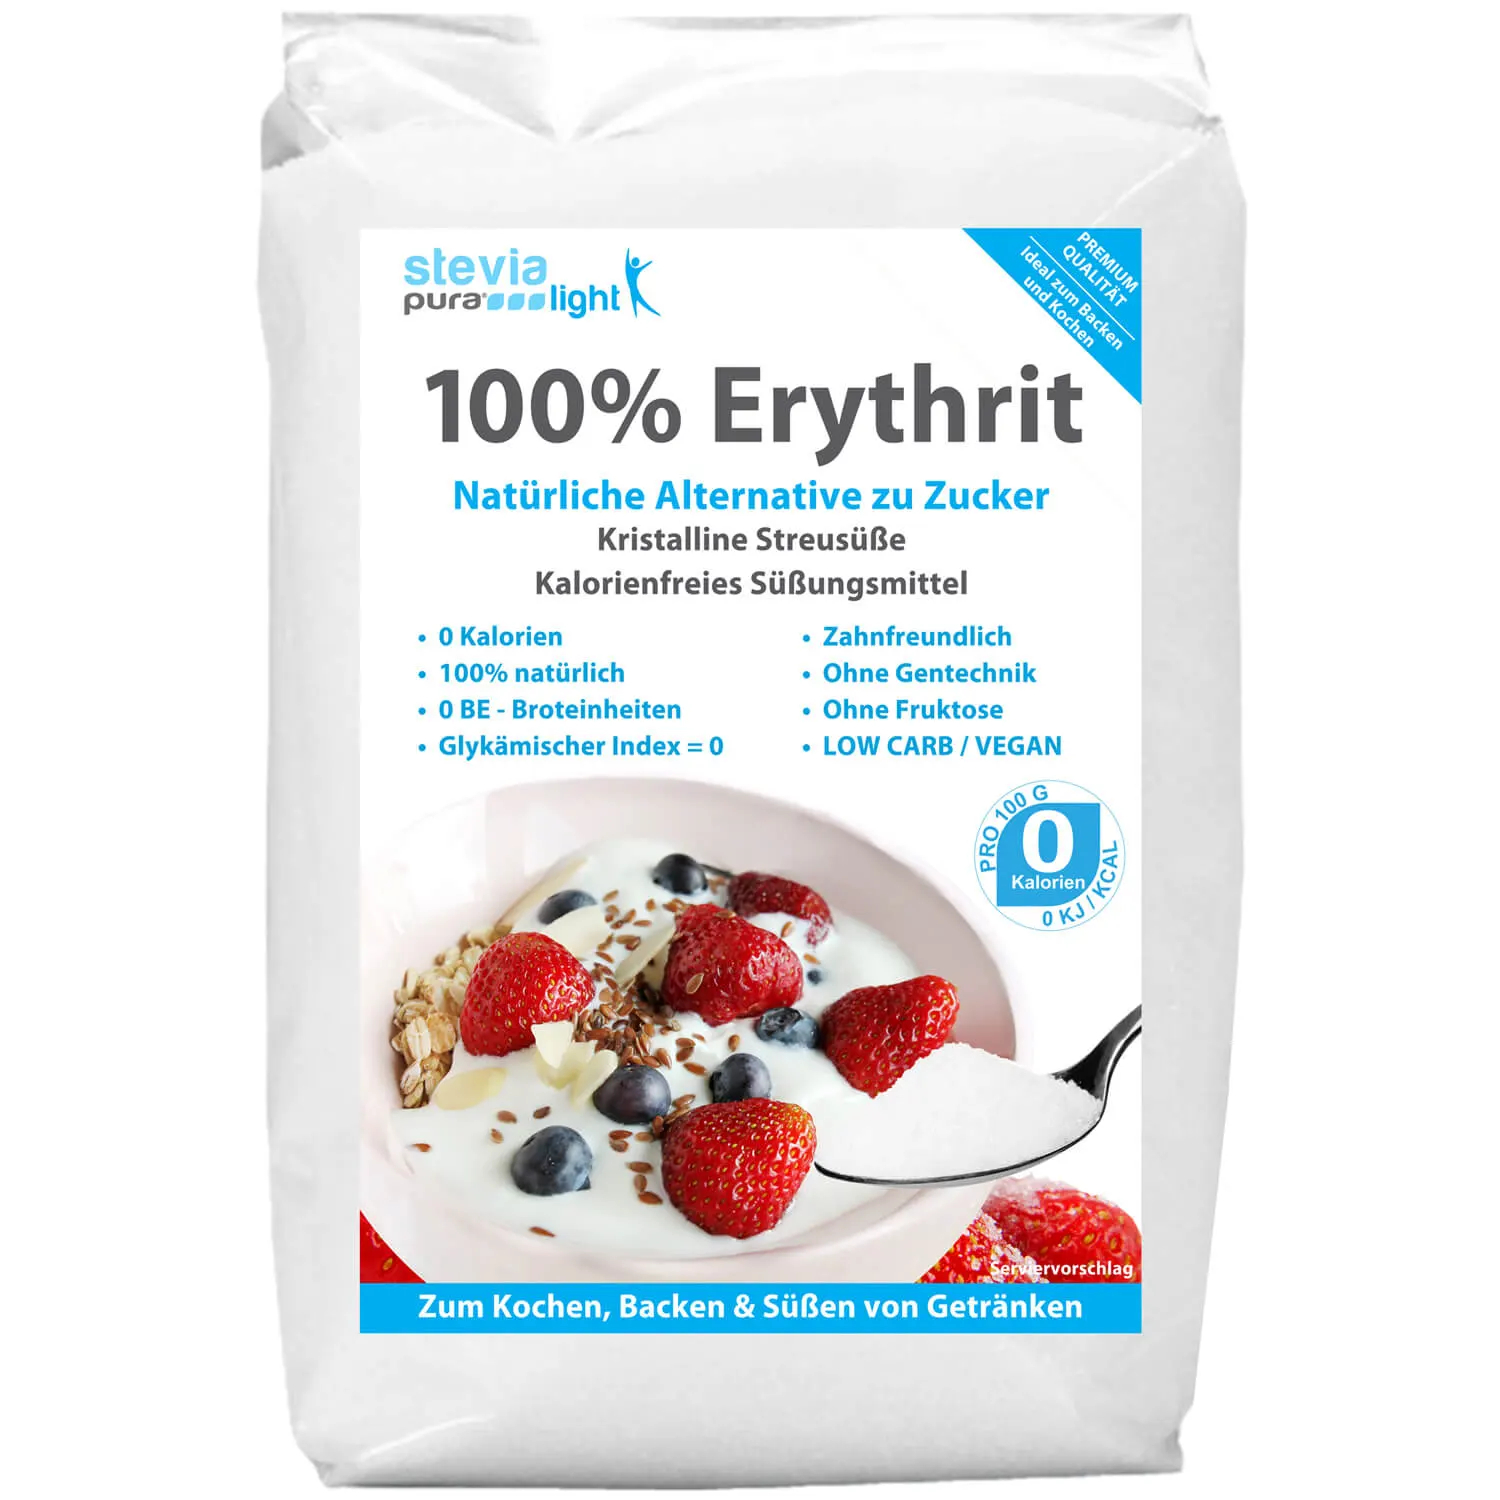 Comprar Eritritol: El sustituto del azúcar también se llama Eritritol.